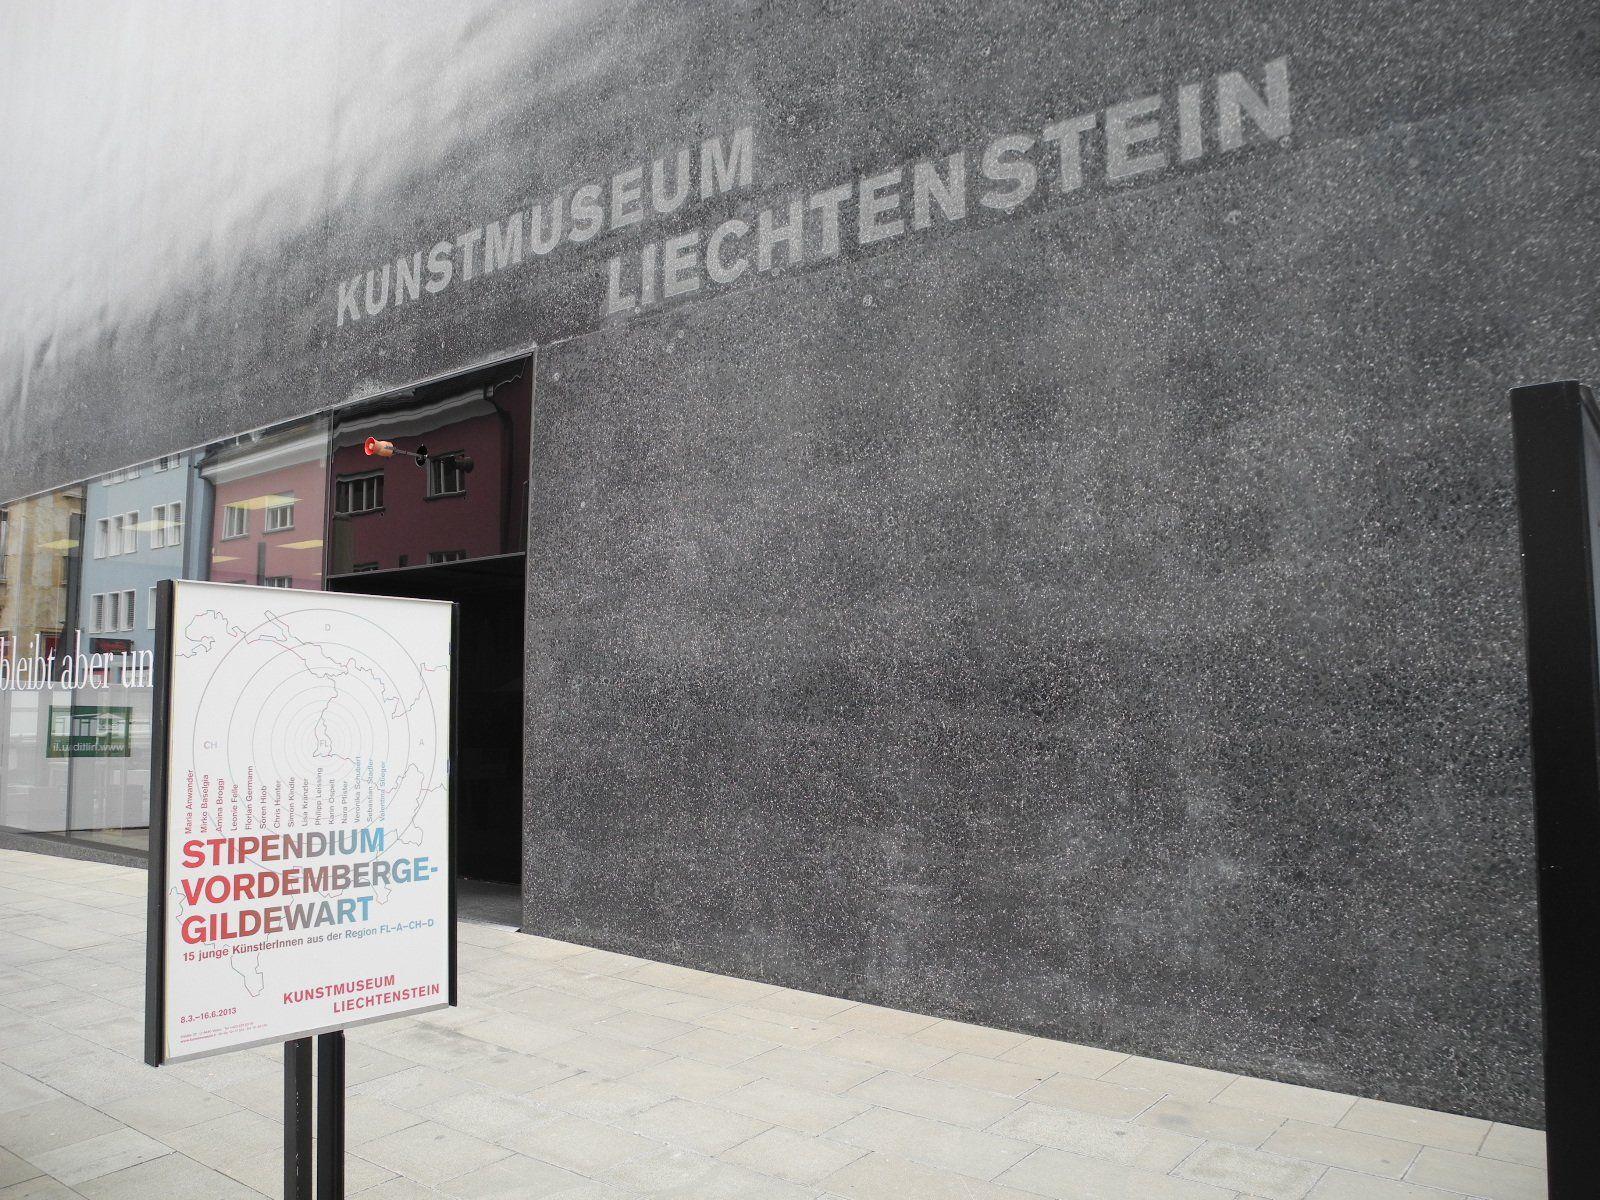 Im Kunstmuseum Liechtenstein ist die Ausstellung "Stipendium Vordernberge-Gildewart 2013" zu sehen